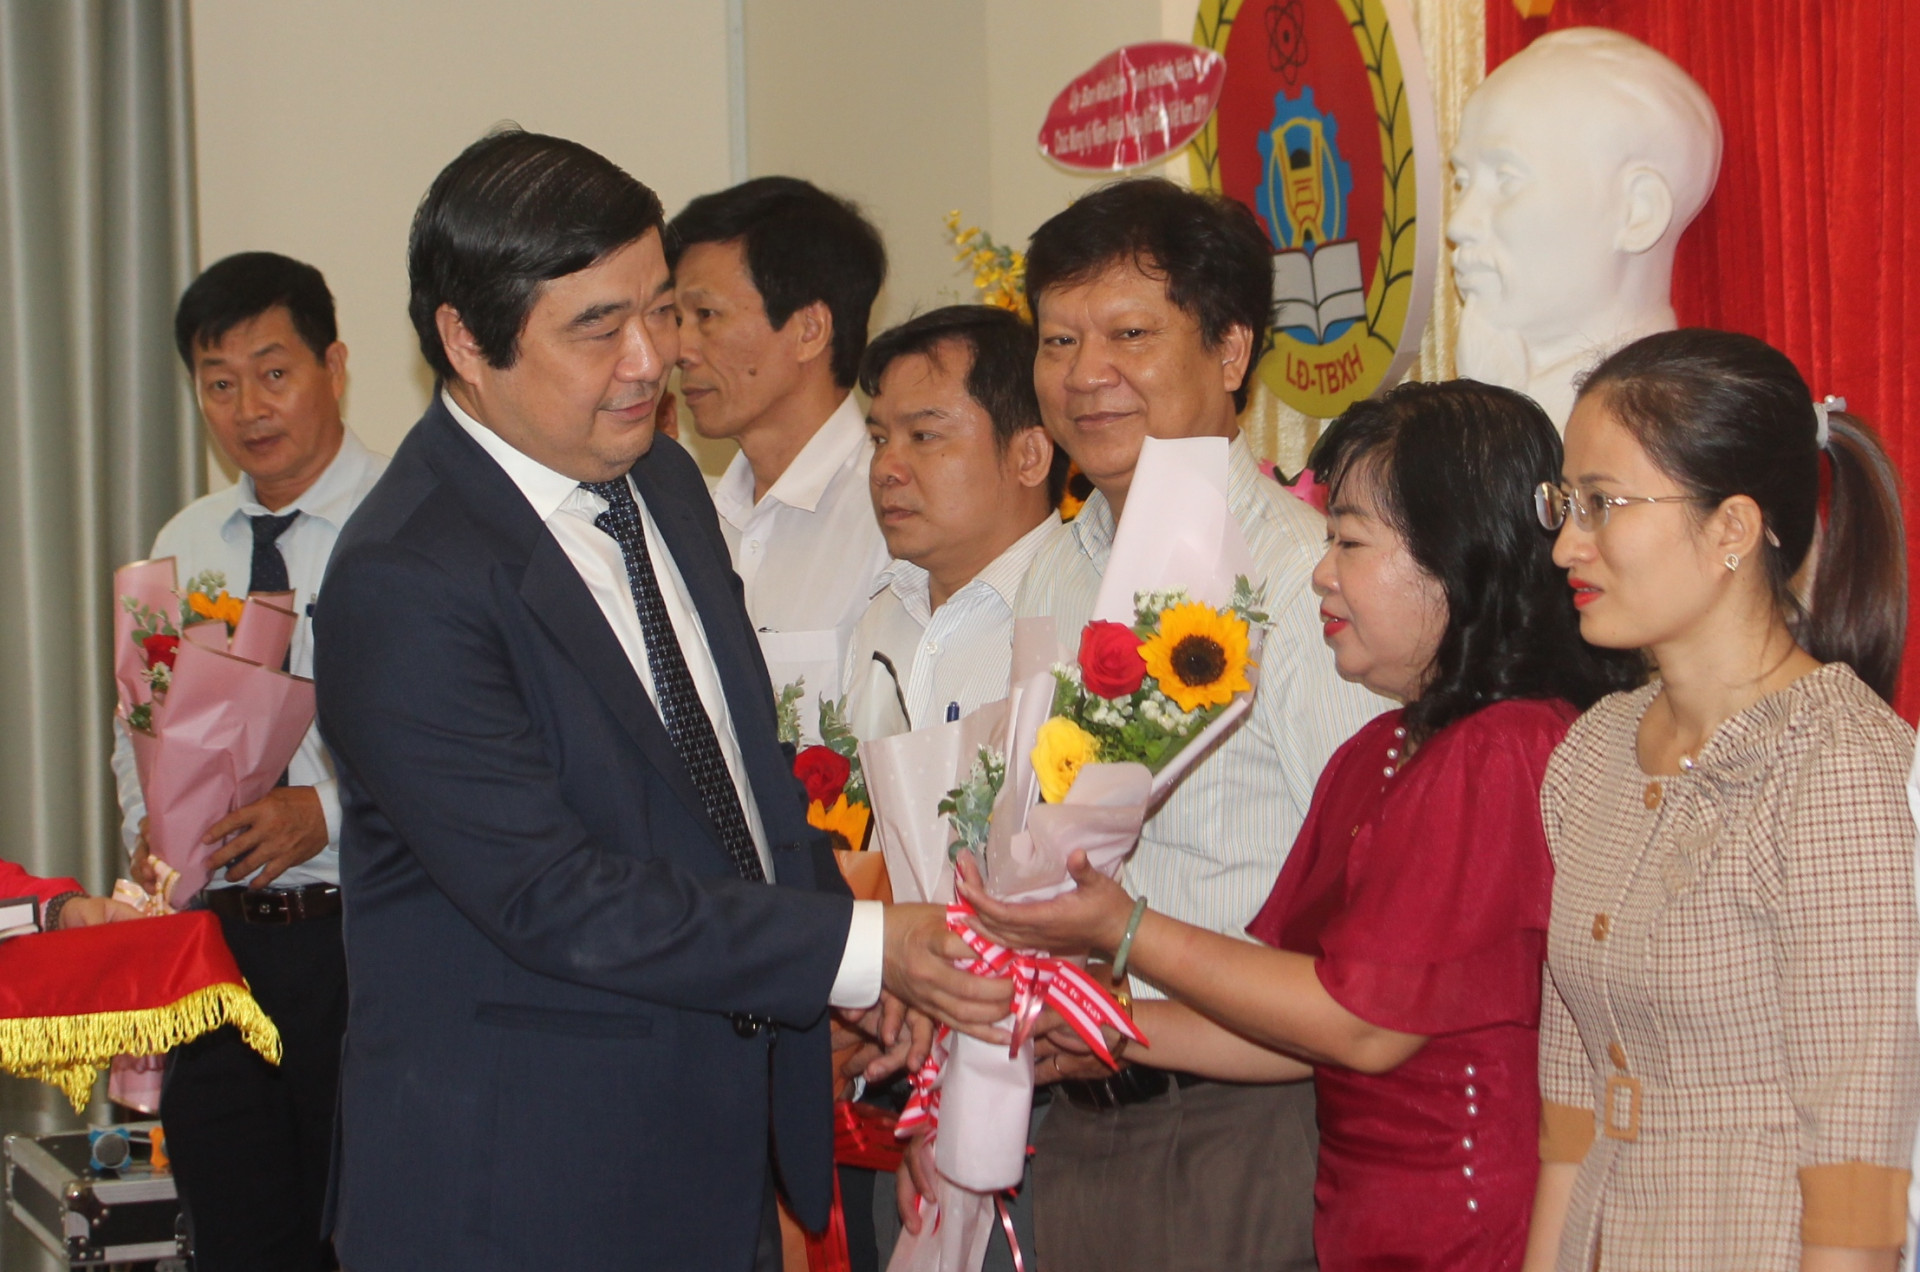  Lãnh đạo Sở Lao động - Thương binh và Xã hội tặng hoa chúc mừng các nhà giáo giáo dục nghề nghiệp.